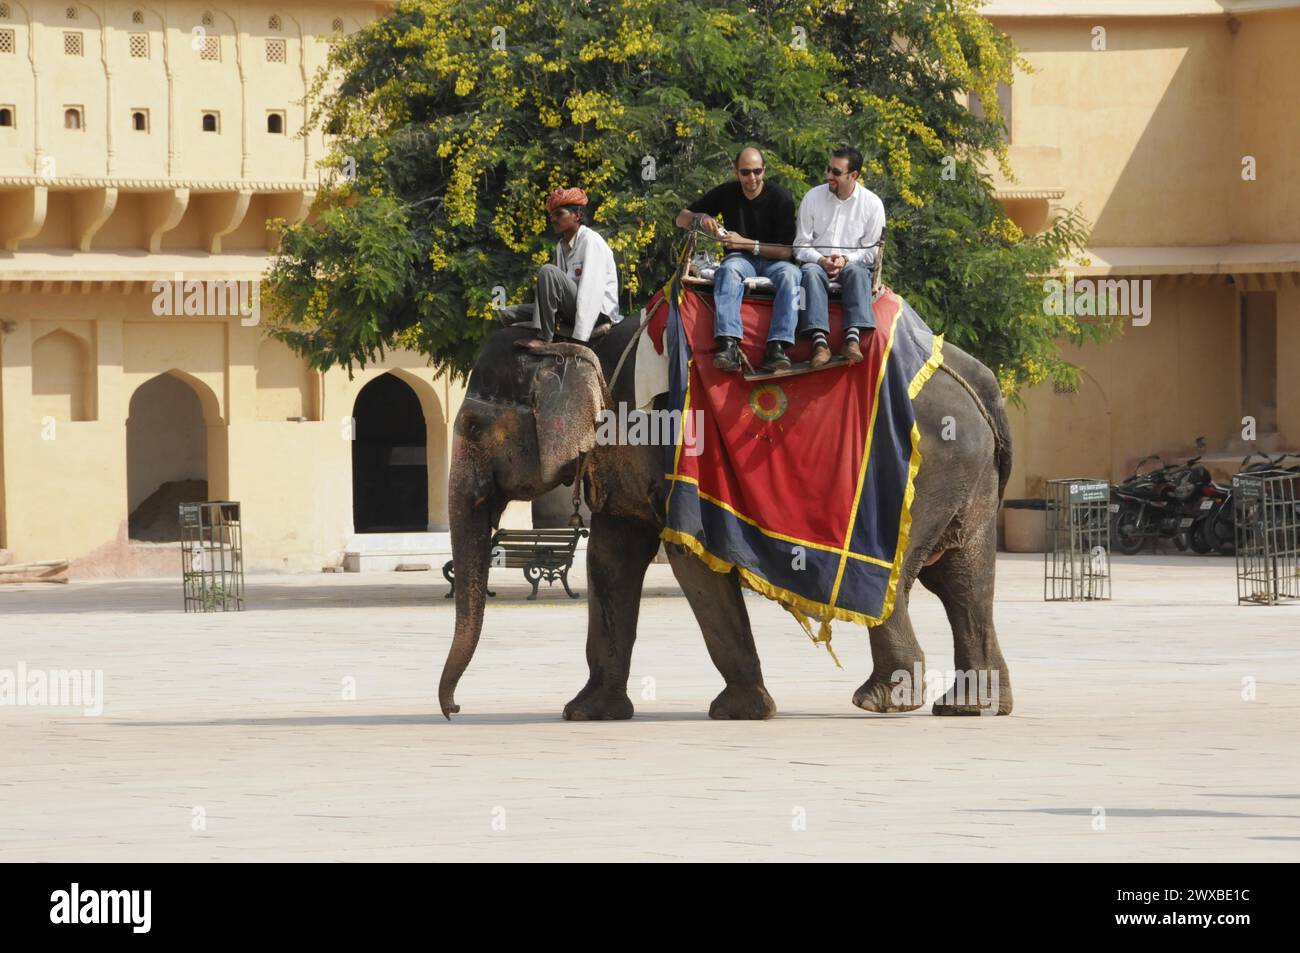 Turisti su un elefante decorato durante un viaggio di andata e ritorno in India, Amber, Rajasthan, India settentrionale, India Foto Stock